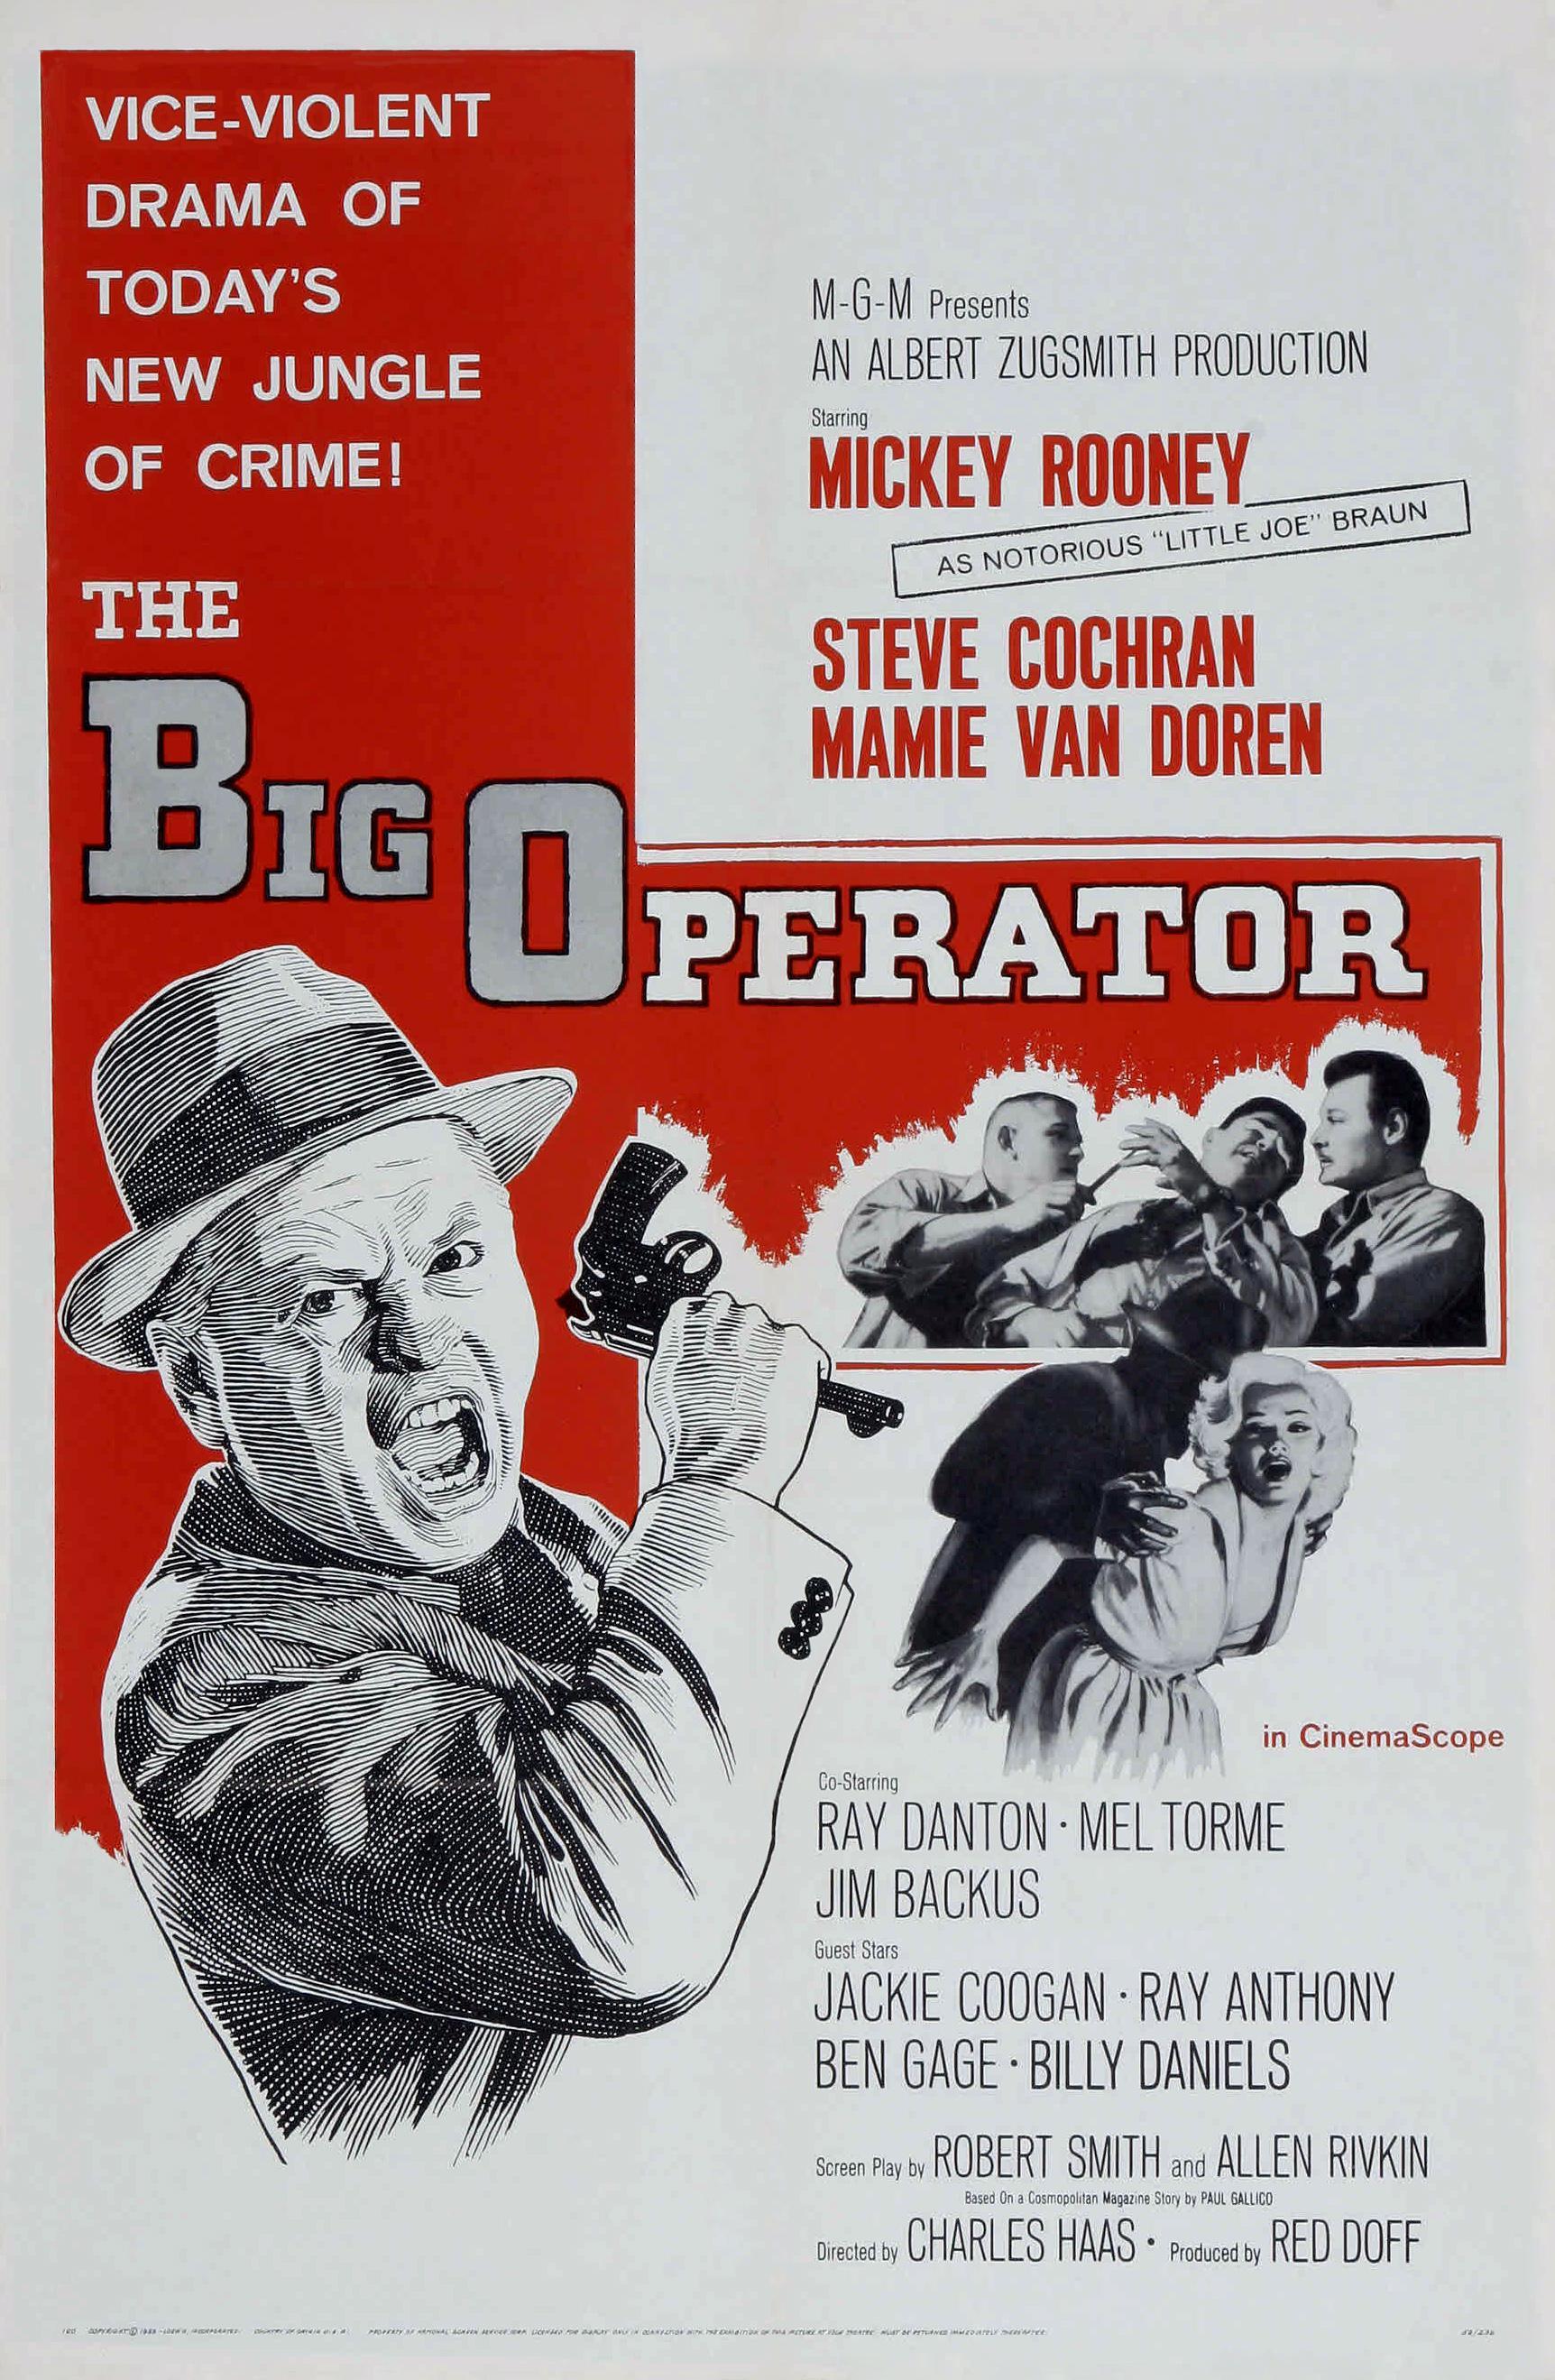 Постер фильма Big Operator